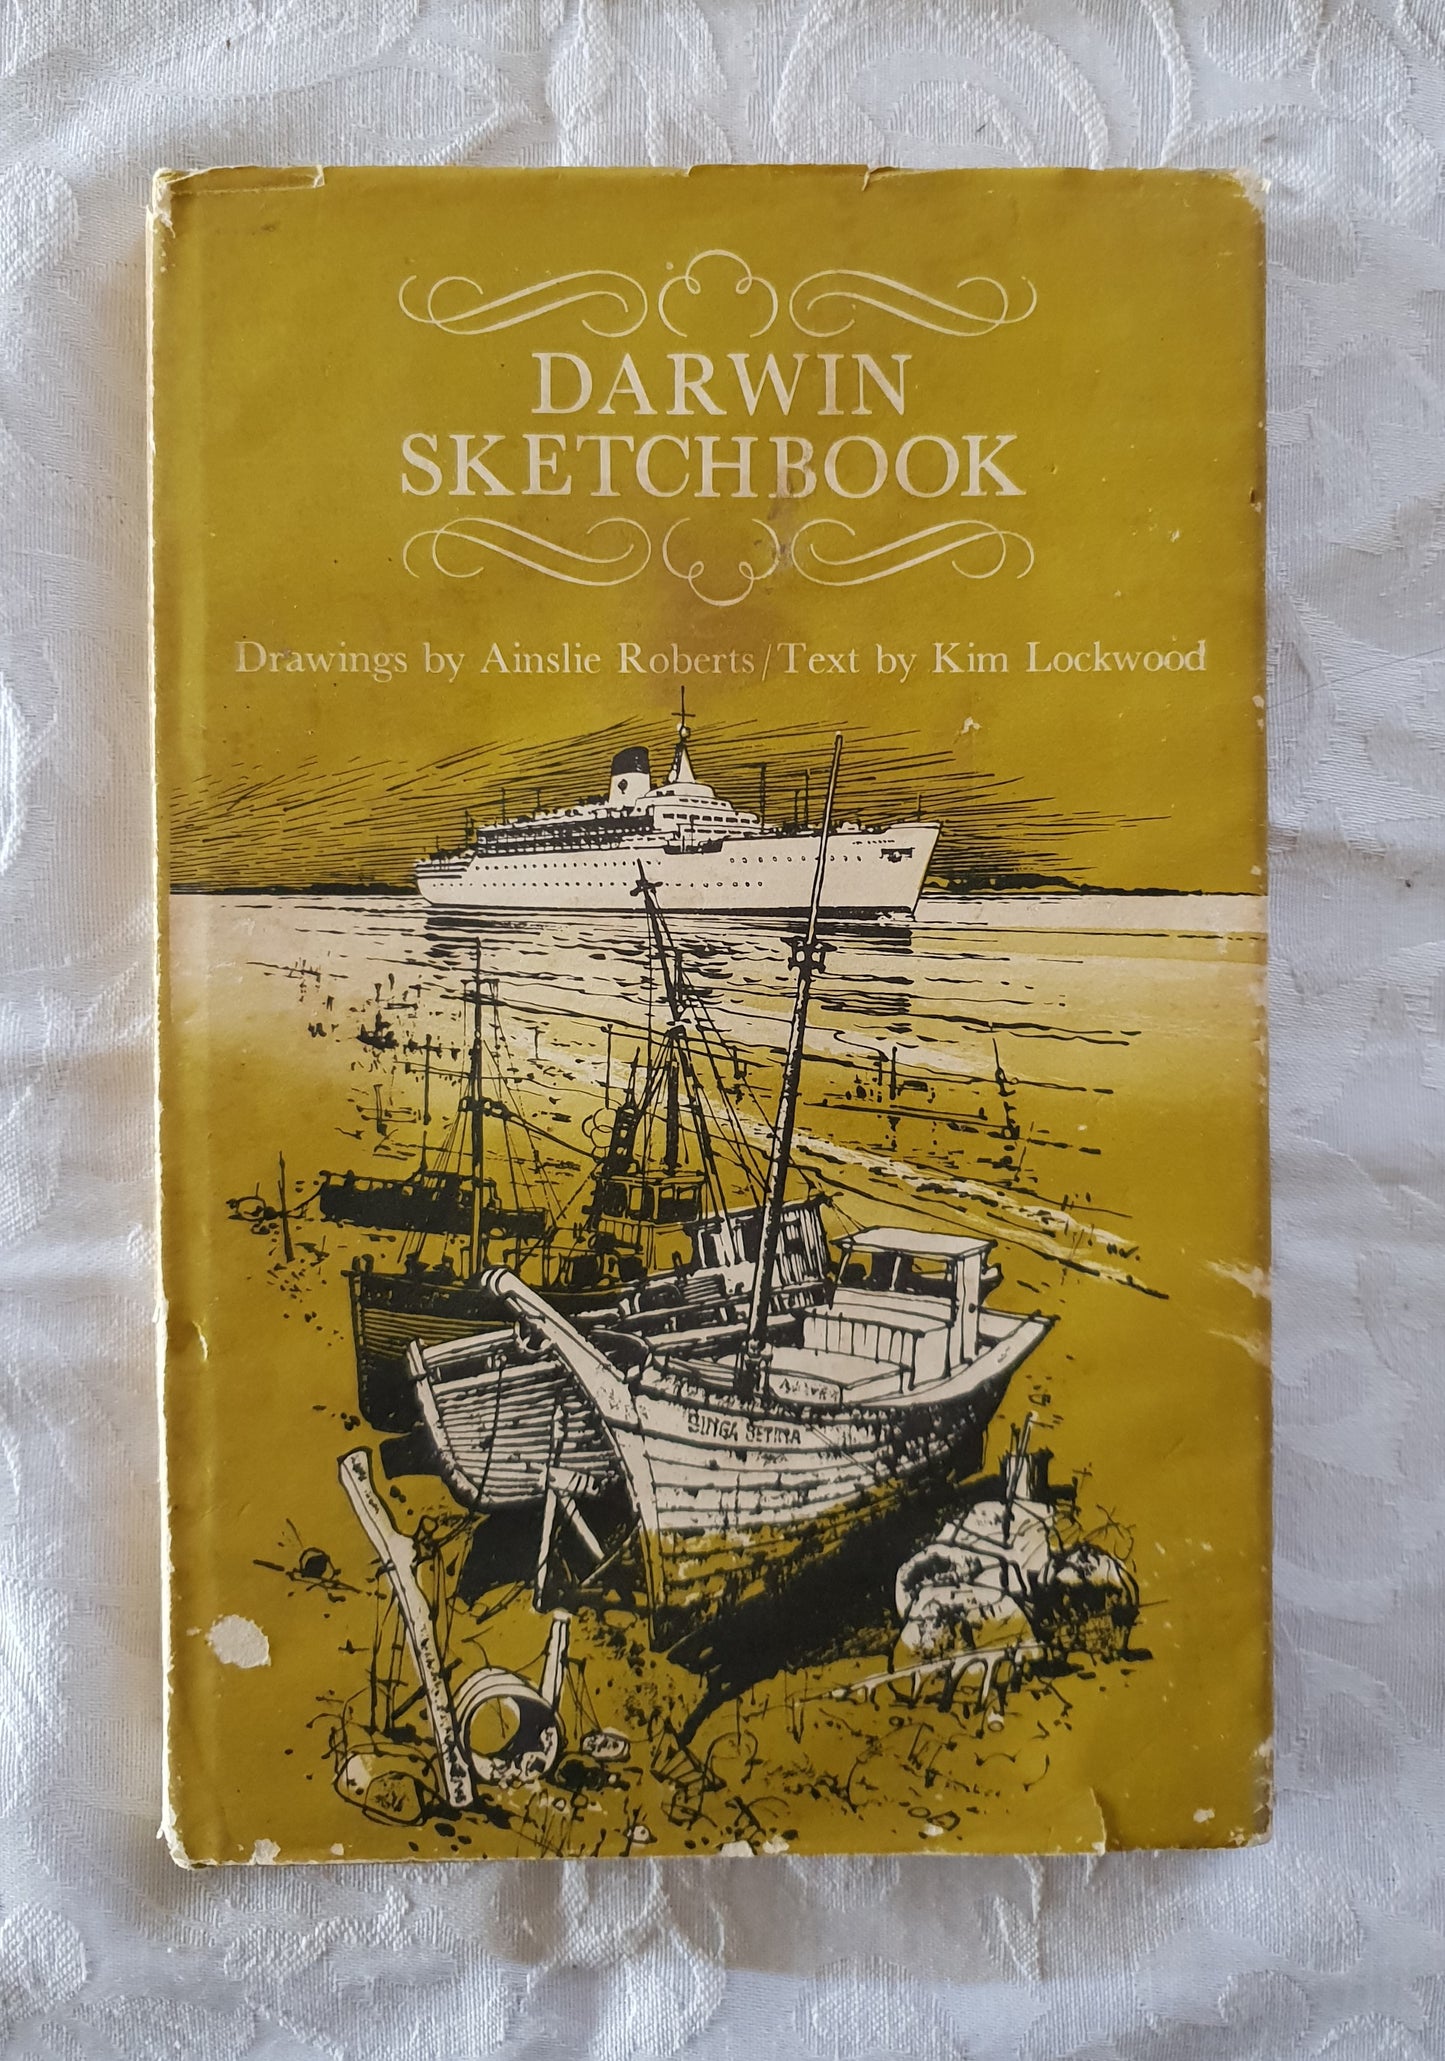 Darwin Sketchbook by Ainslie Roberts and Kim Lockwood